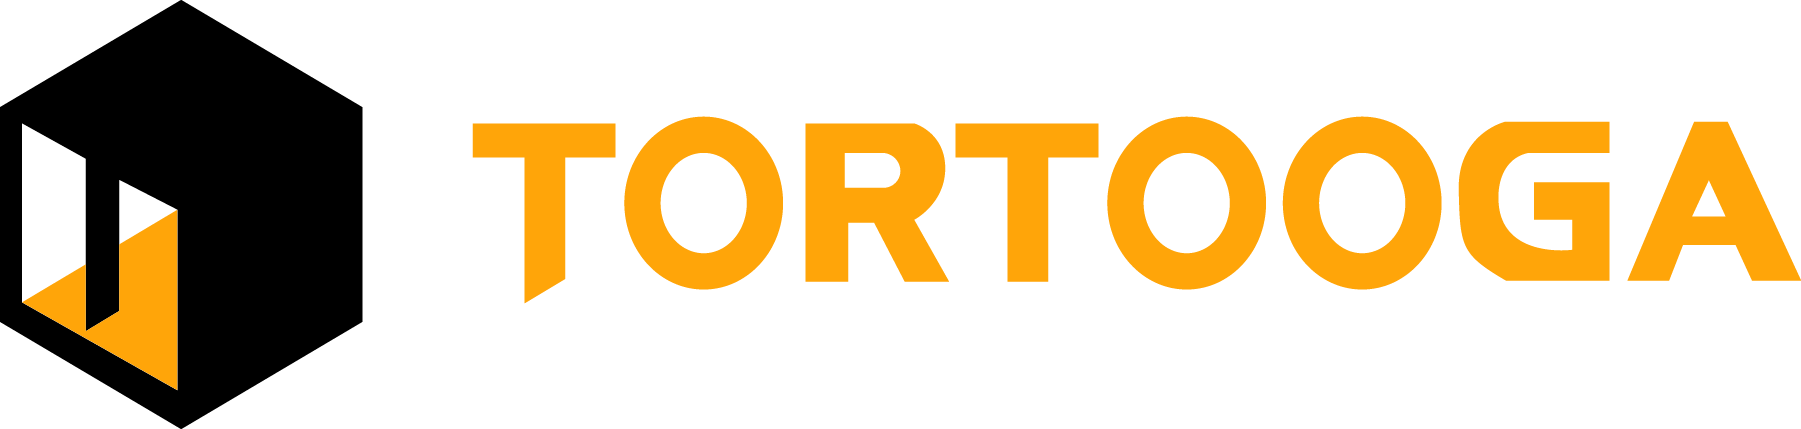 Tortooga  | Get Microsoft Power Platform Solutions from Exigo Tech Philippines